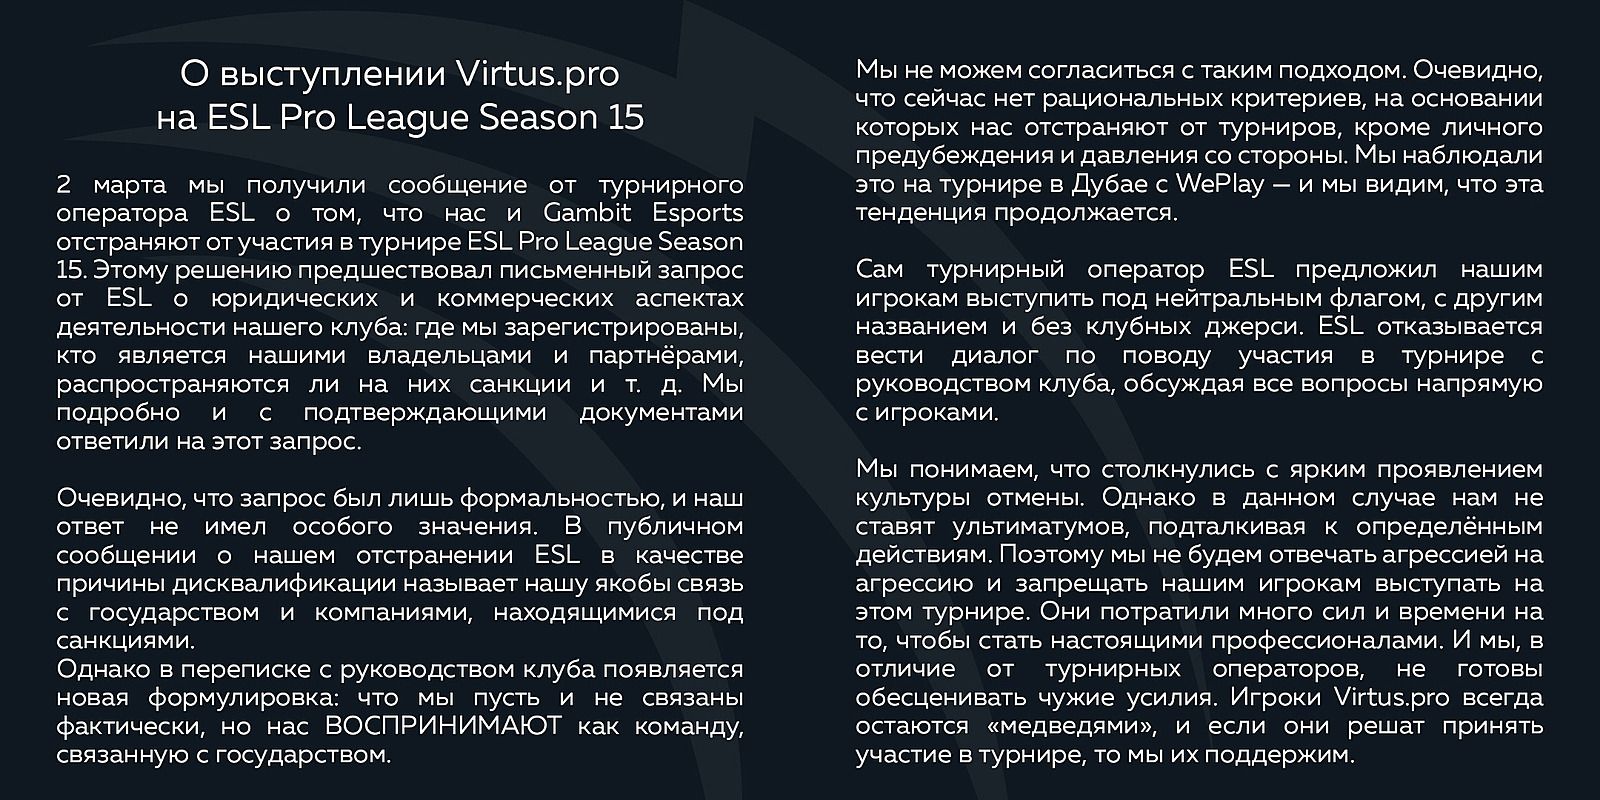 Заявление Virtus.pro касательно ESL Pro League Season 15